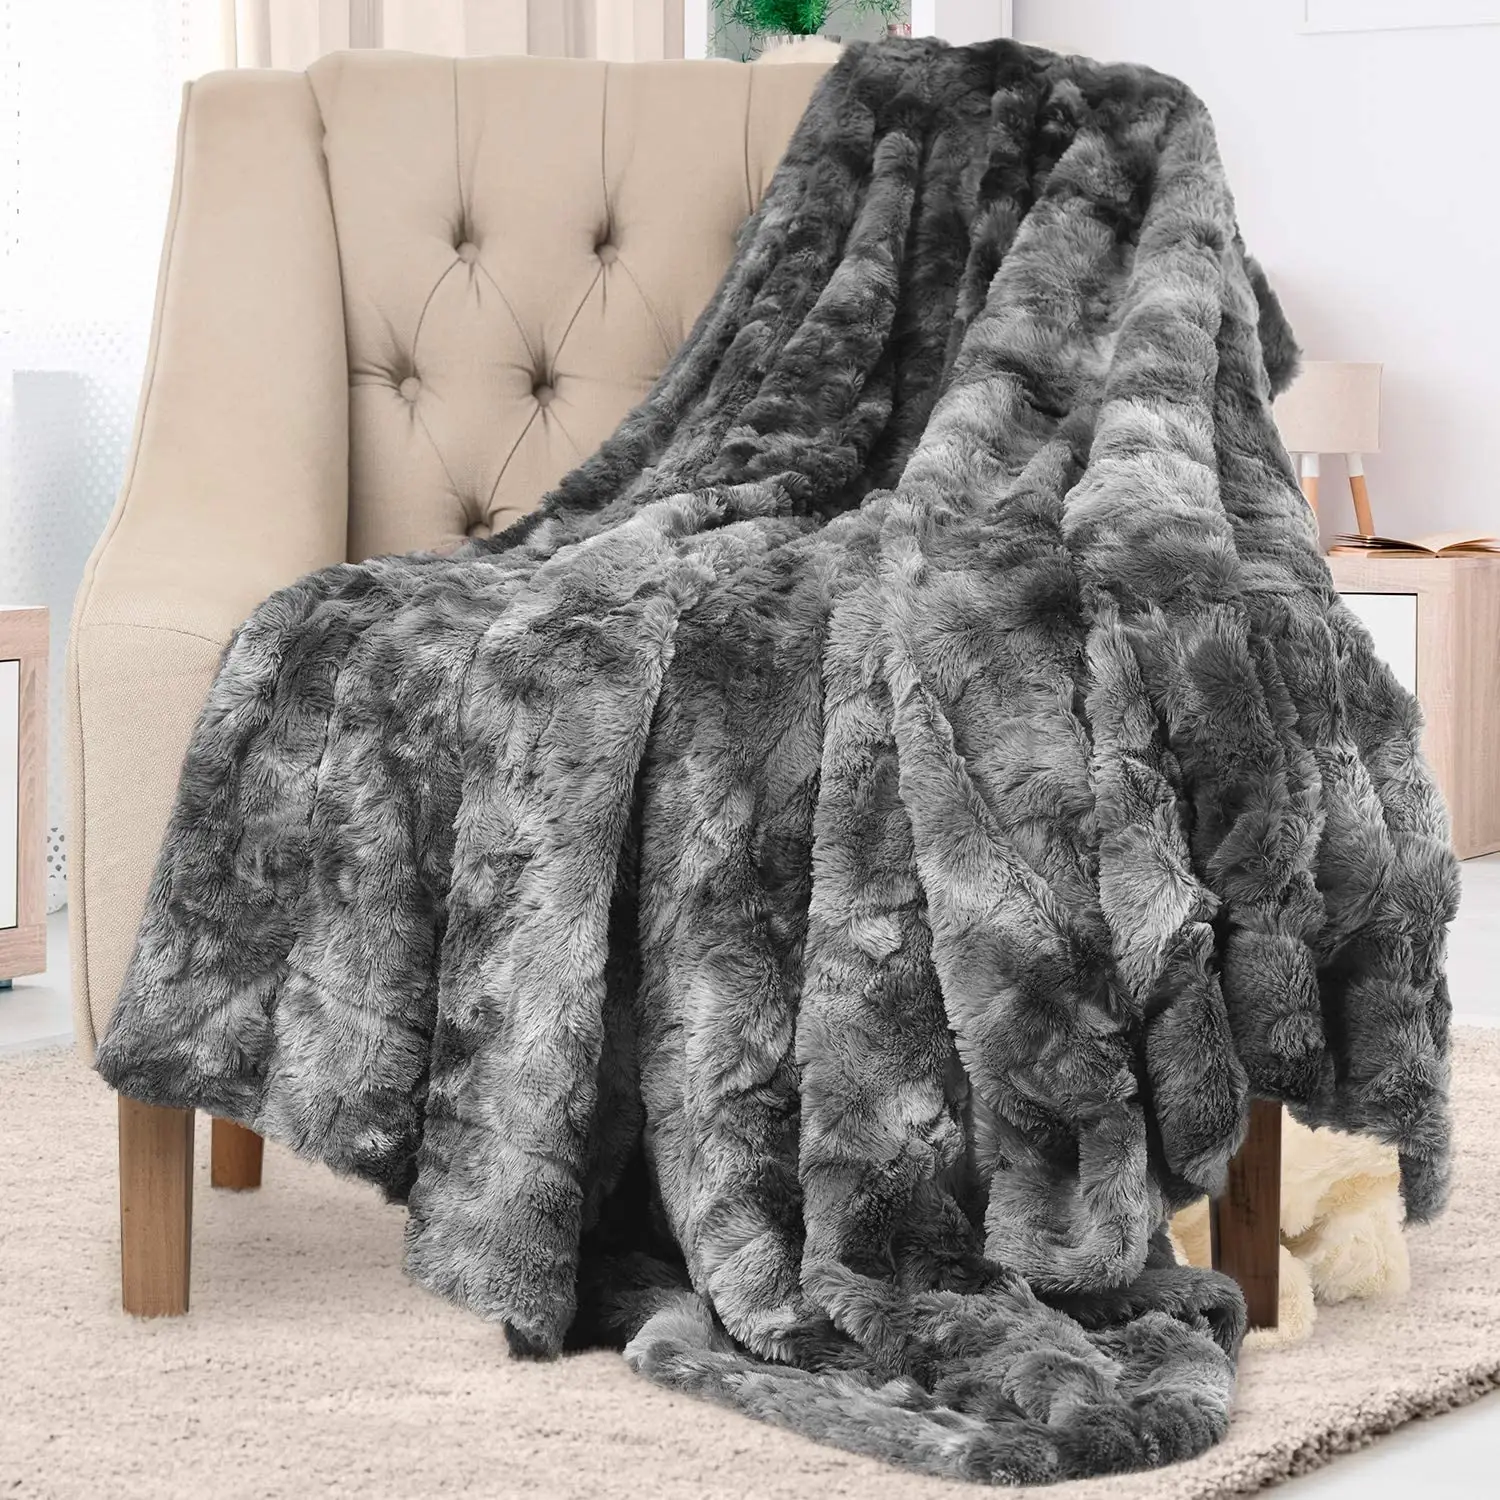 Produk Baru Selimut Bulu Palsu Desain Motif Macan Tutul Putih Mewah untuk Musim Dingin Selimut Lempar Lembut Nyaman untuk Sofa Tempat Tidur